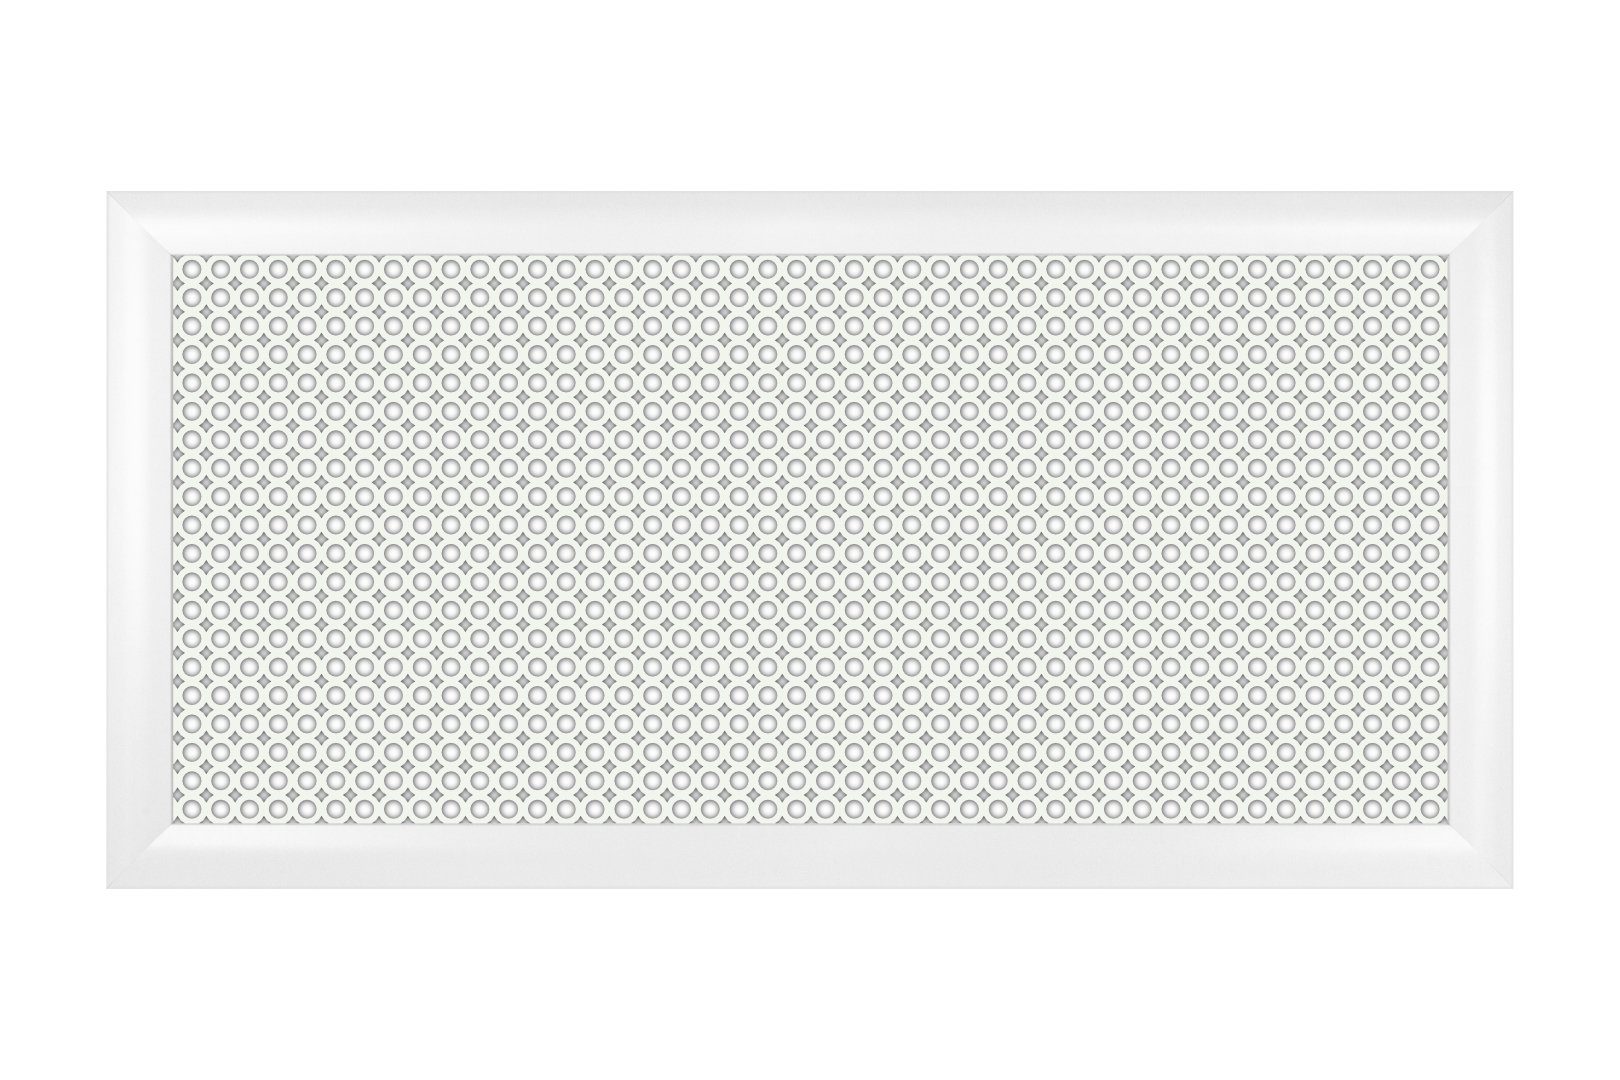 Arkmaster Heizungsverkleidung, Heizkörperverkleidung Wabenmuster Lüftungsgitter MDF Holzlochplatte Circo foliert Heizkörper Holz, 600 x - 1200mm für (120x60cm) Heizkörperabdeckung weiß